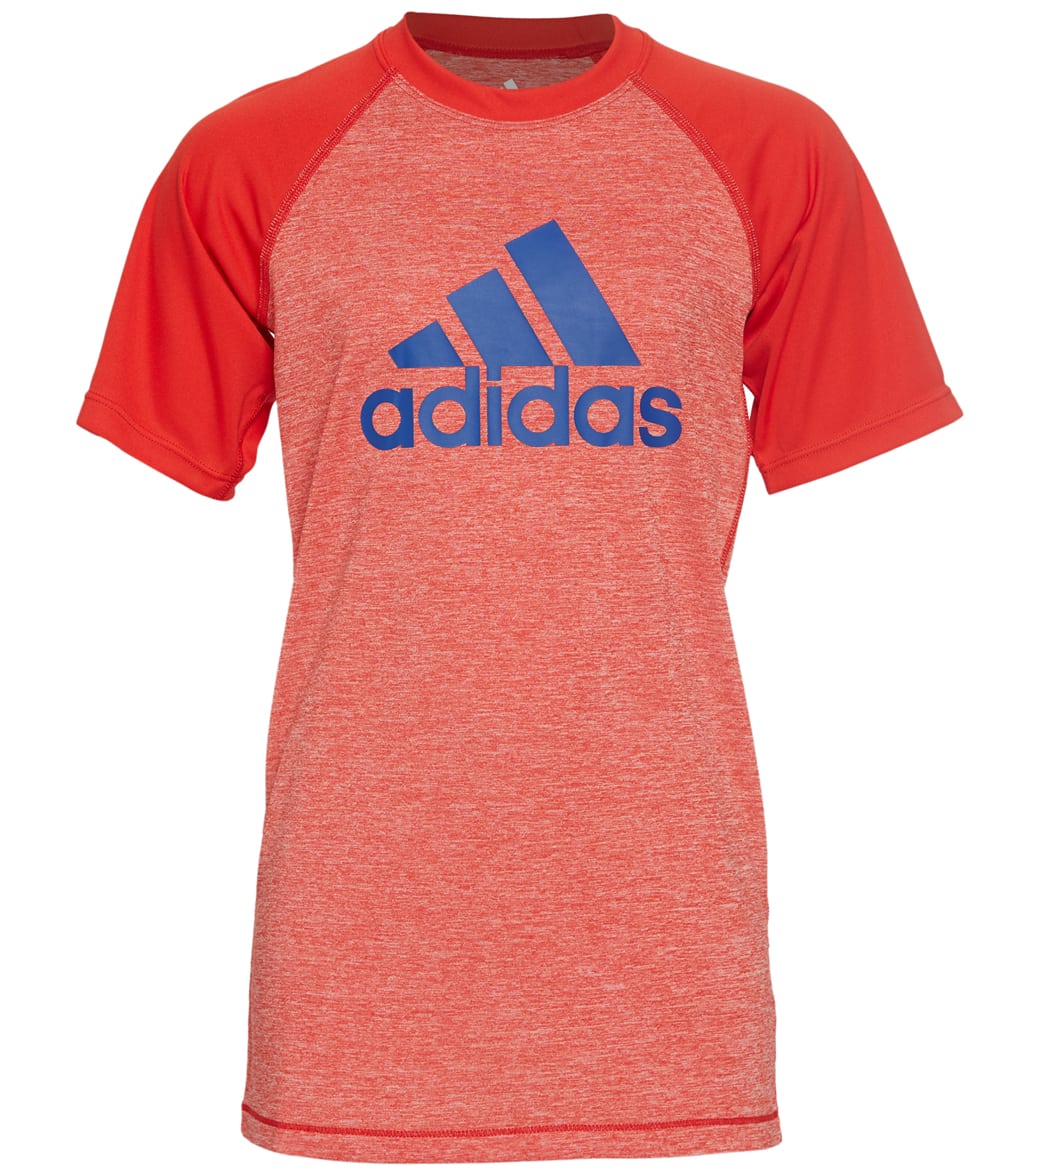 Adidas Boys' Swim Tee Shirt Big Kid - Red Small Polyester - Swimoutlet.com